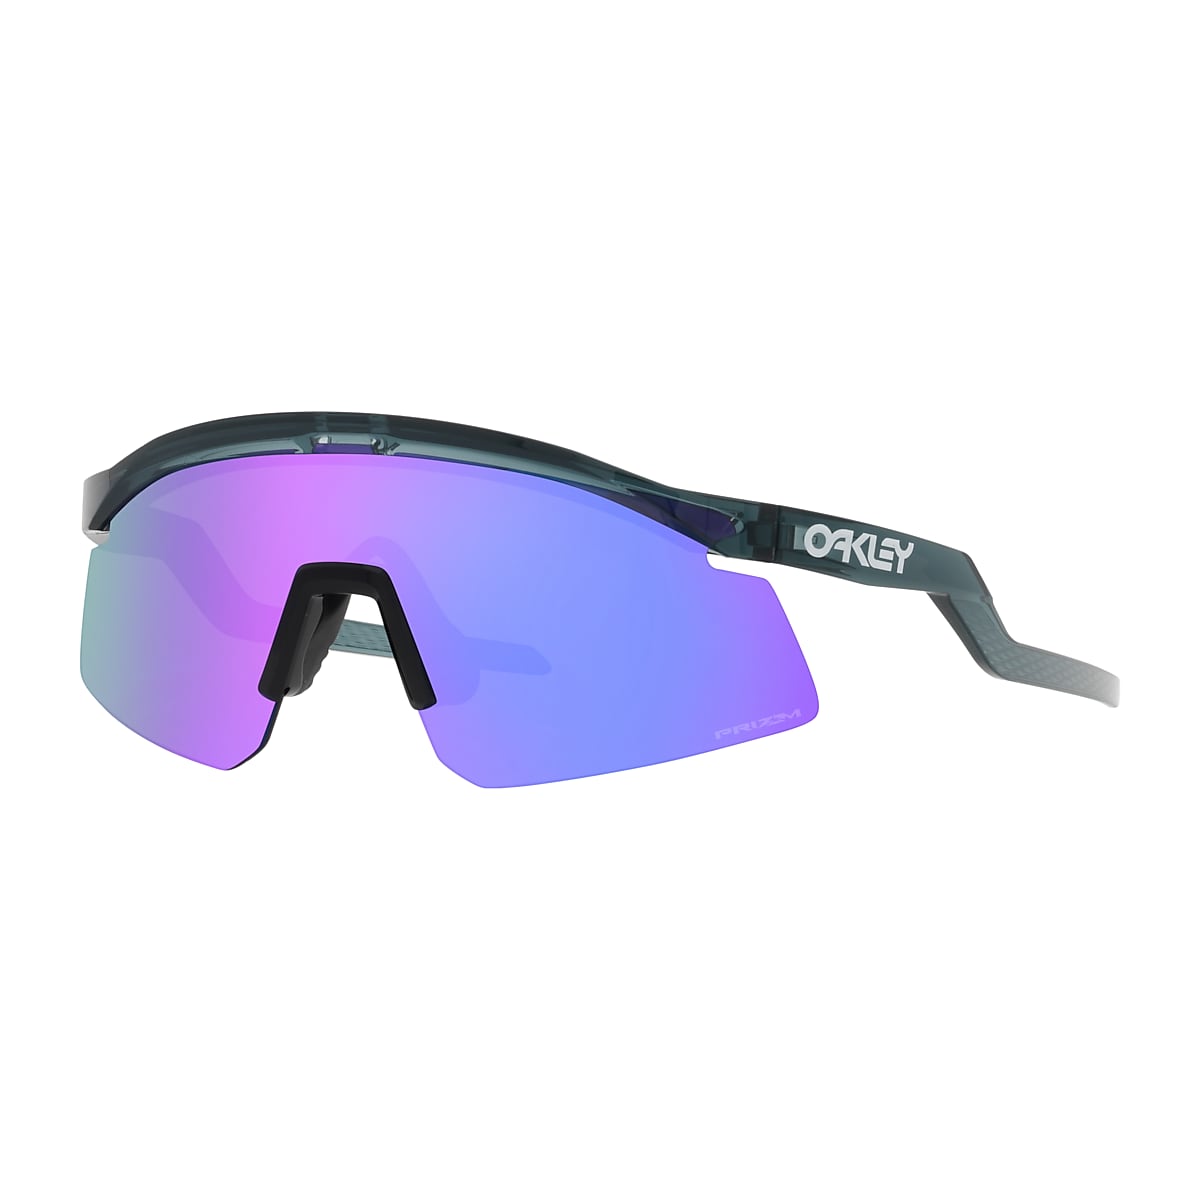 Stræbe vitamin uendelig Hydra Prizm Violet Lenses, Crystal Black Frame Sunglasses | Oakley® US